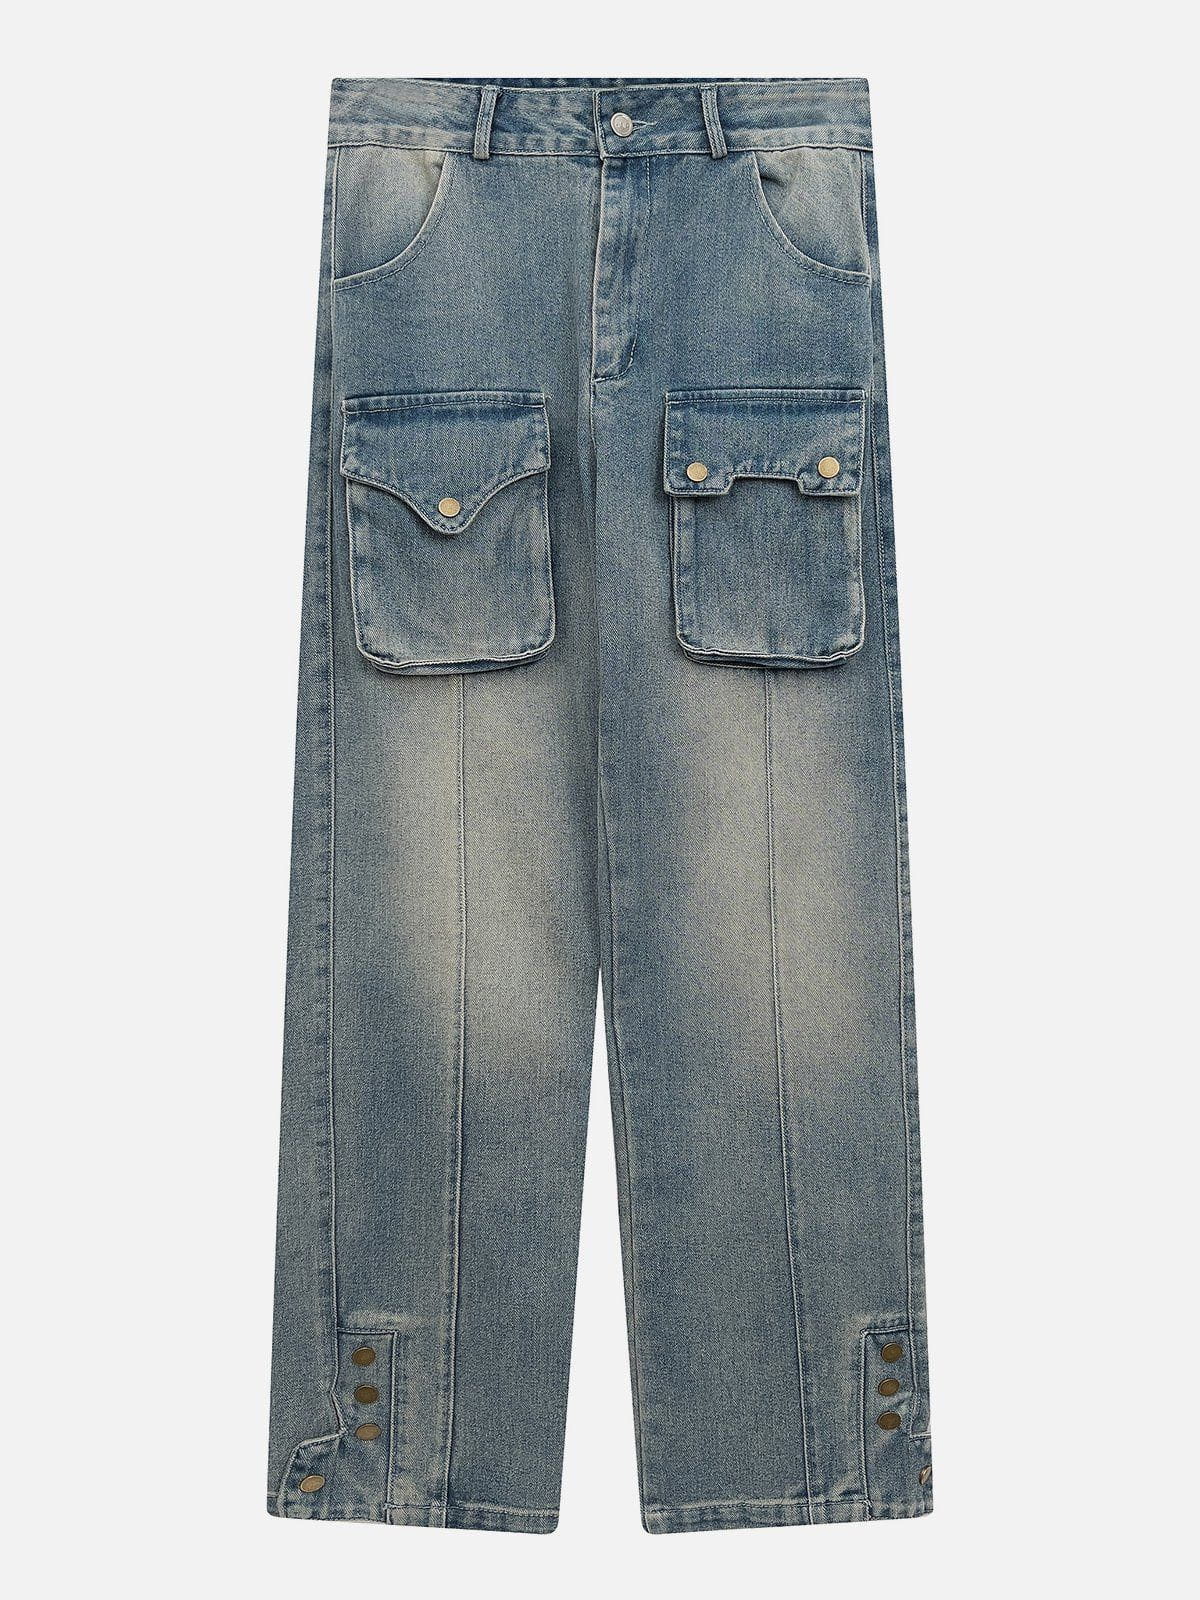 Eprezzy® - Multi Pockets Jeans Streetwear Fashion - eprezzy.com